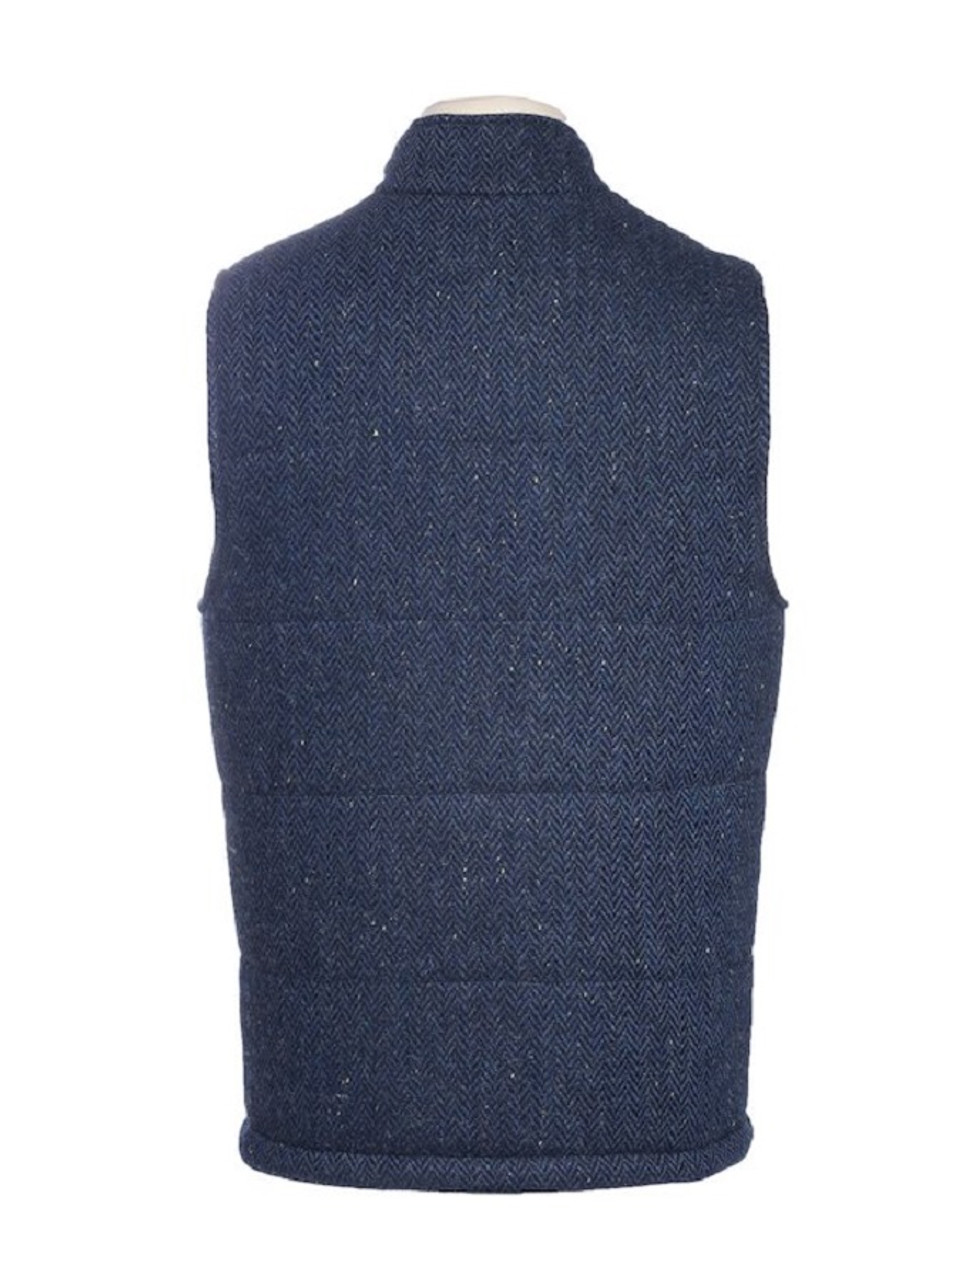 Men's Tweed Body Warmer - Blue Herringbone | Celtic Tweeds